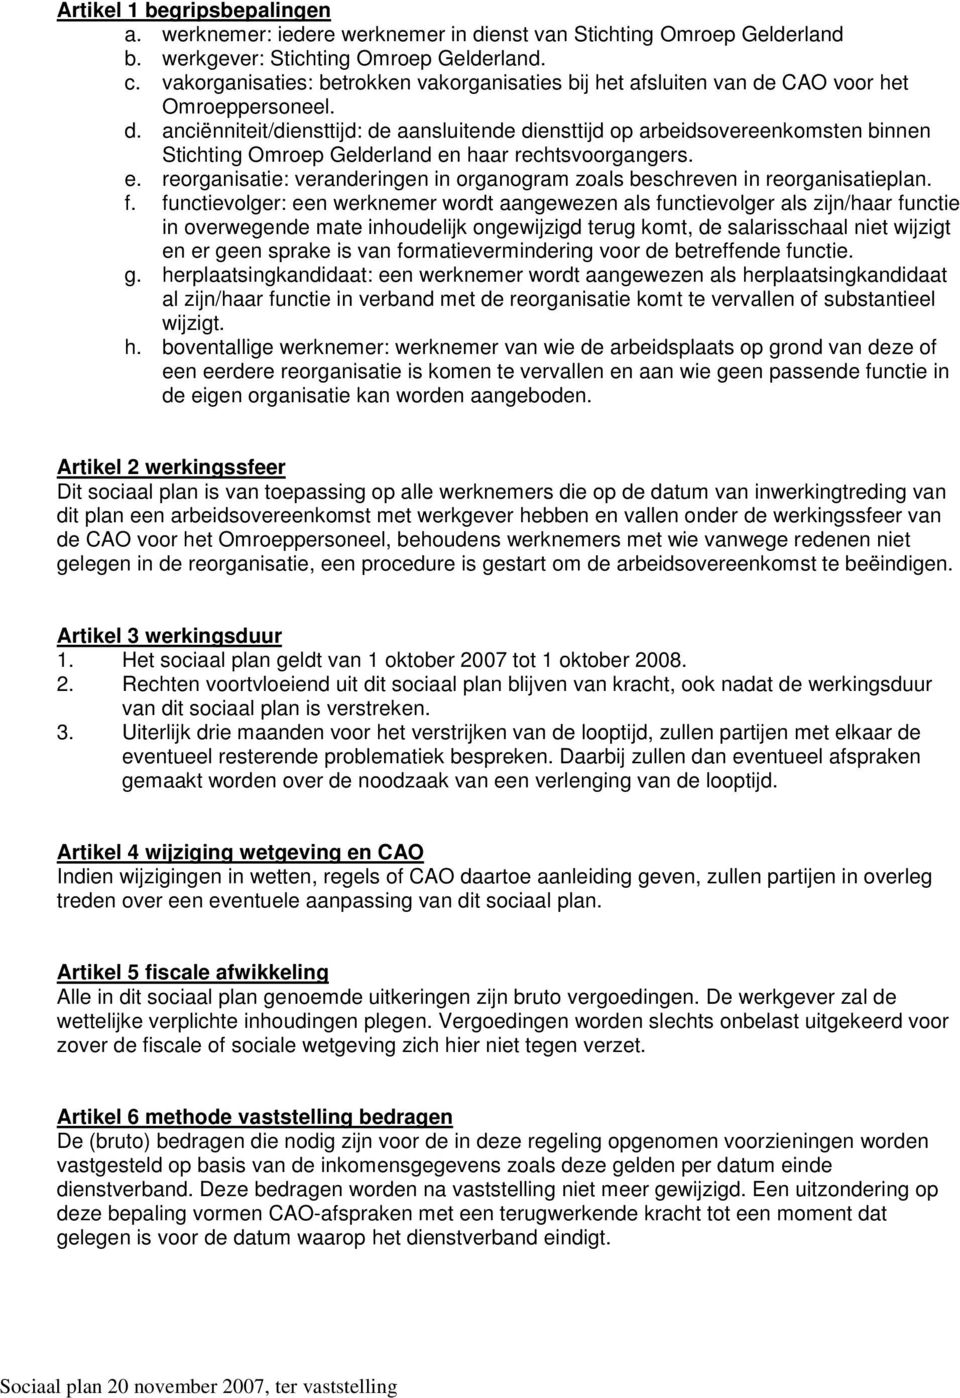 CAO voor het Omroeppersoneel. d. anciënniteit/diensttijd: de aansluitende diensttijd op arbeidsovereenkomsten binnen Stichting Omroep Gelderland en